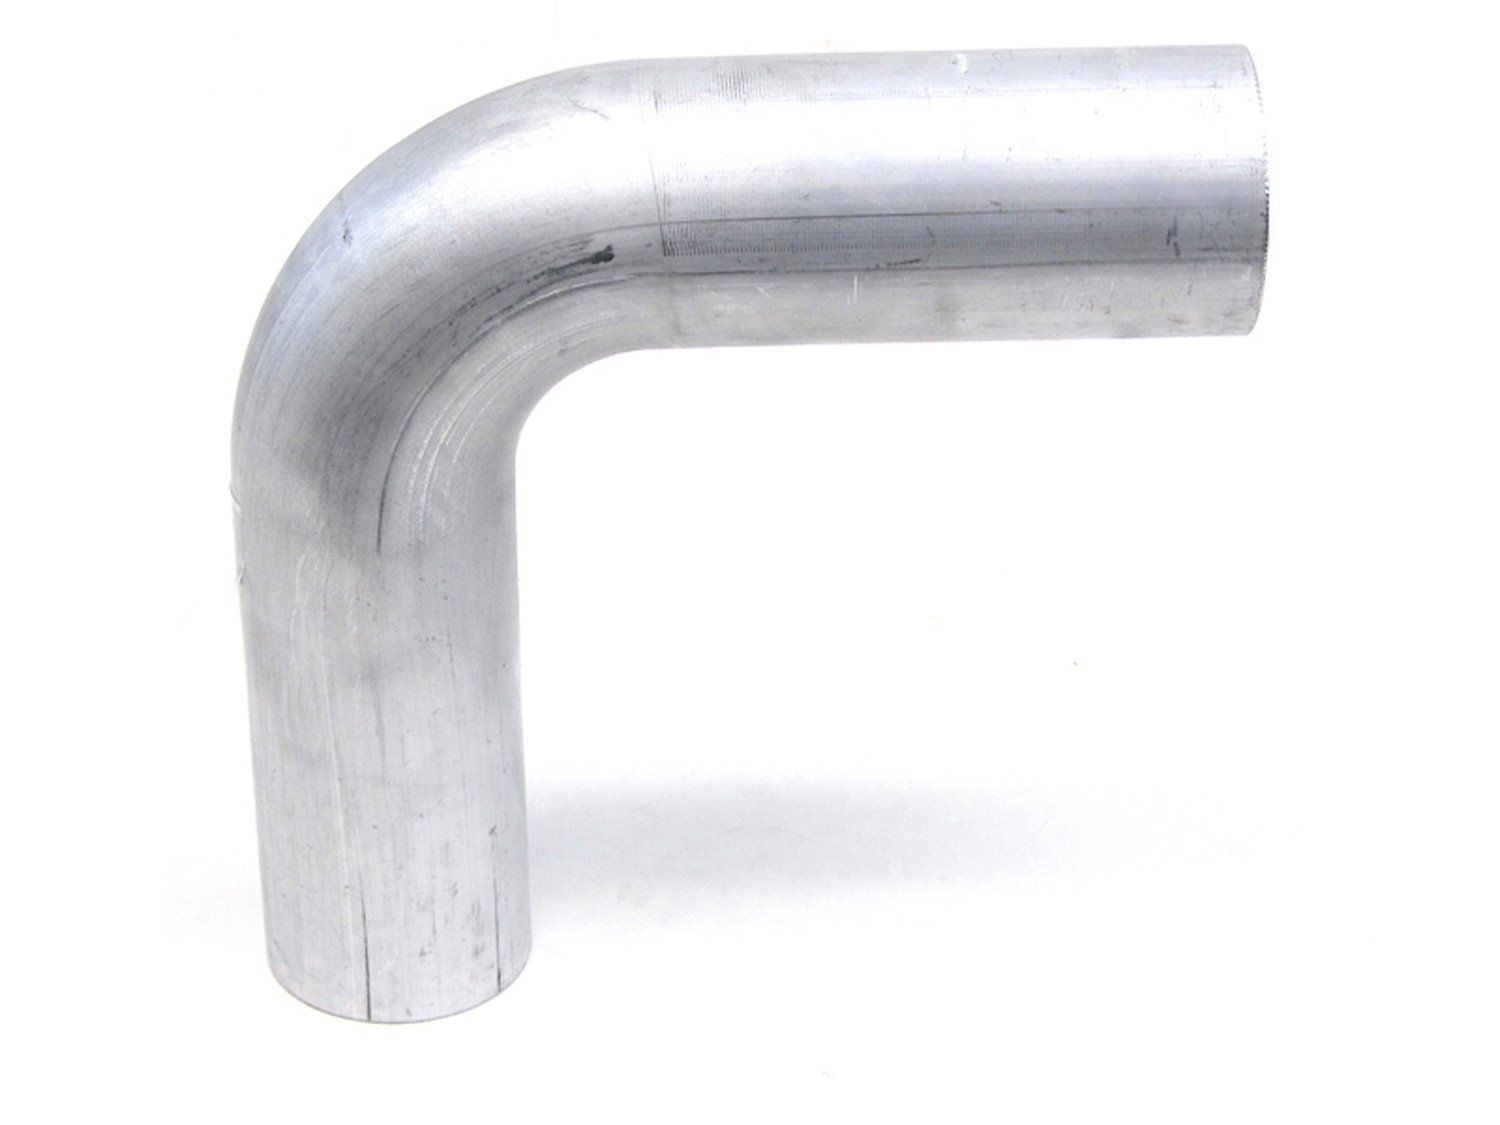 AT90-075-CLR-2 Aluminum Elbow Tube, 6061 Aluminum, 90-Degree Bend Elbow Tubing, 3/4 in. OD, Tight Radius, 2 in. CLR